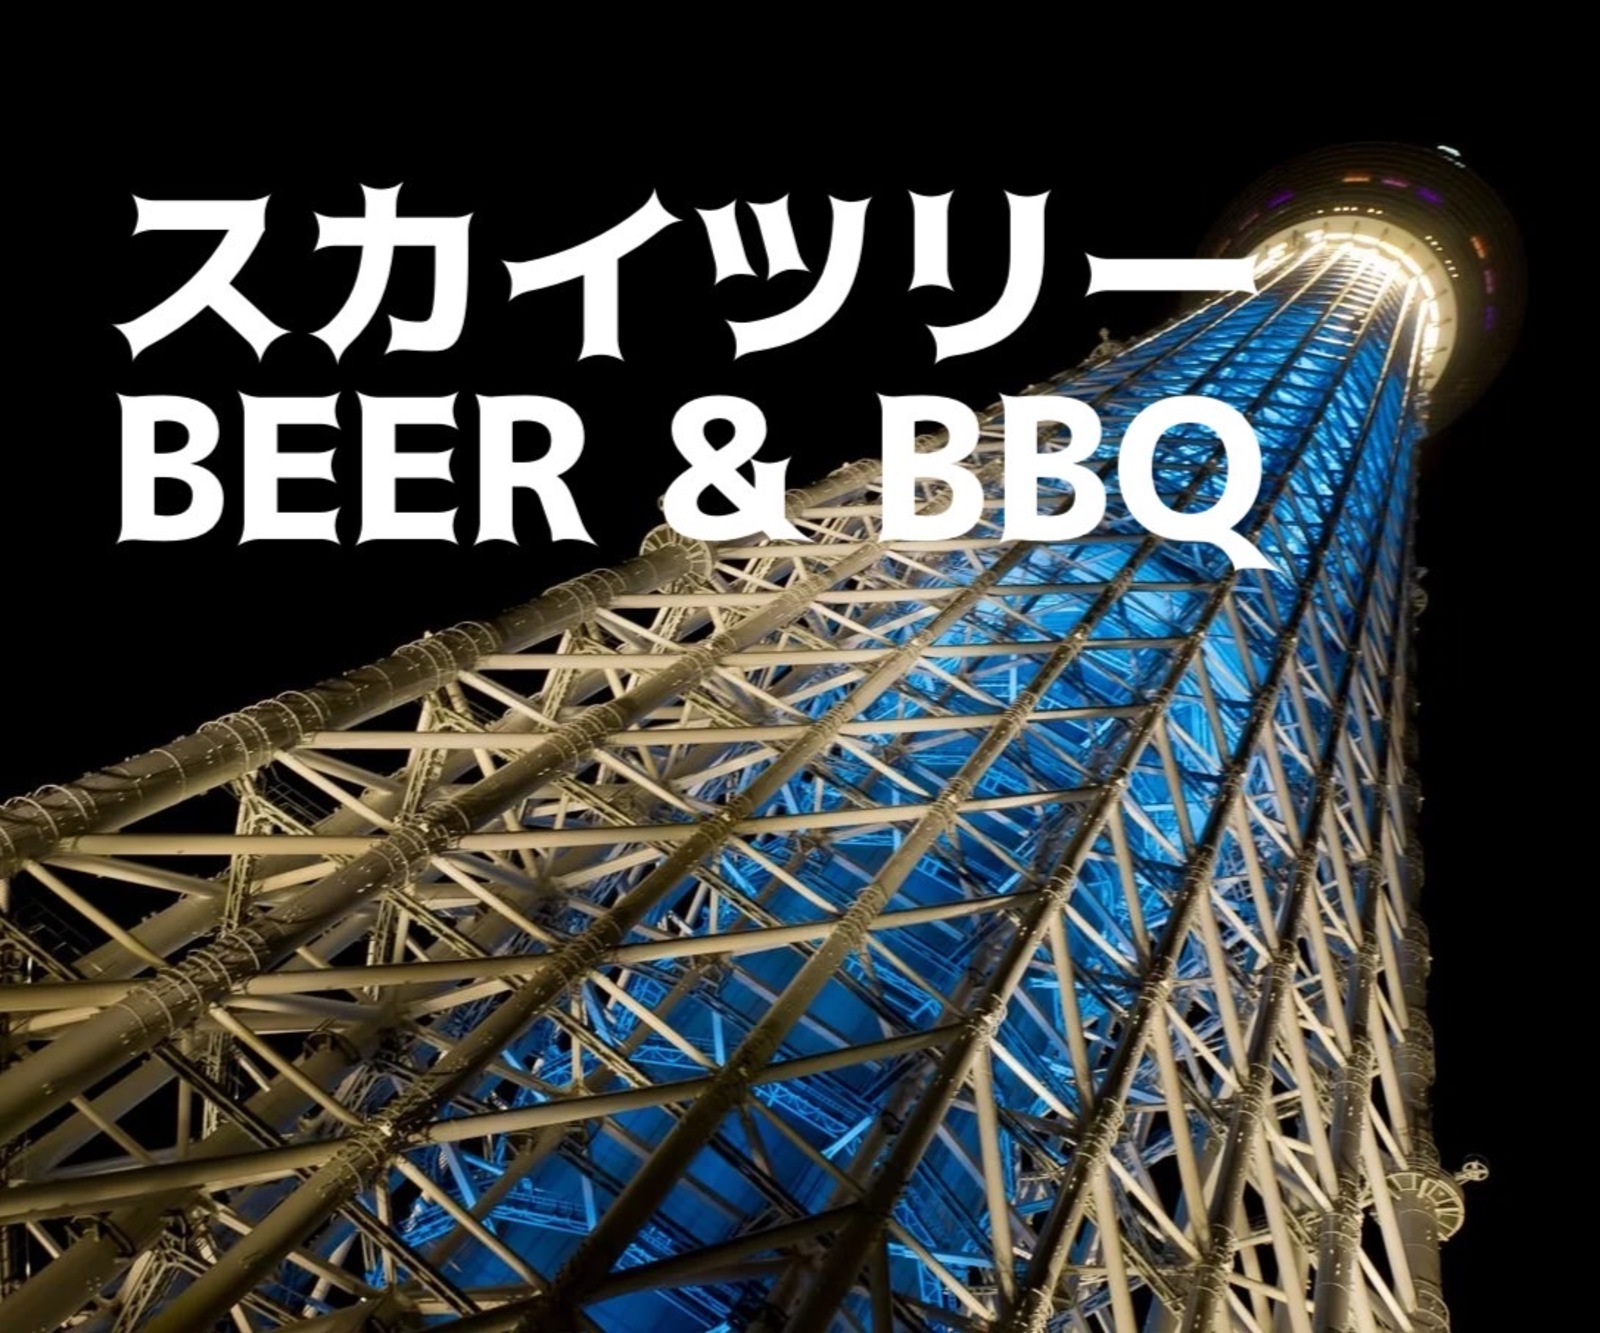 【スカイツリーでBBQ】40代50代★美しい夜景を眺めながら東京最大級のBBQビアガーデンで夏を楽しもう🍻🍖